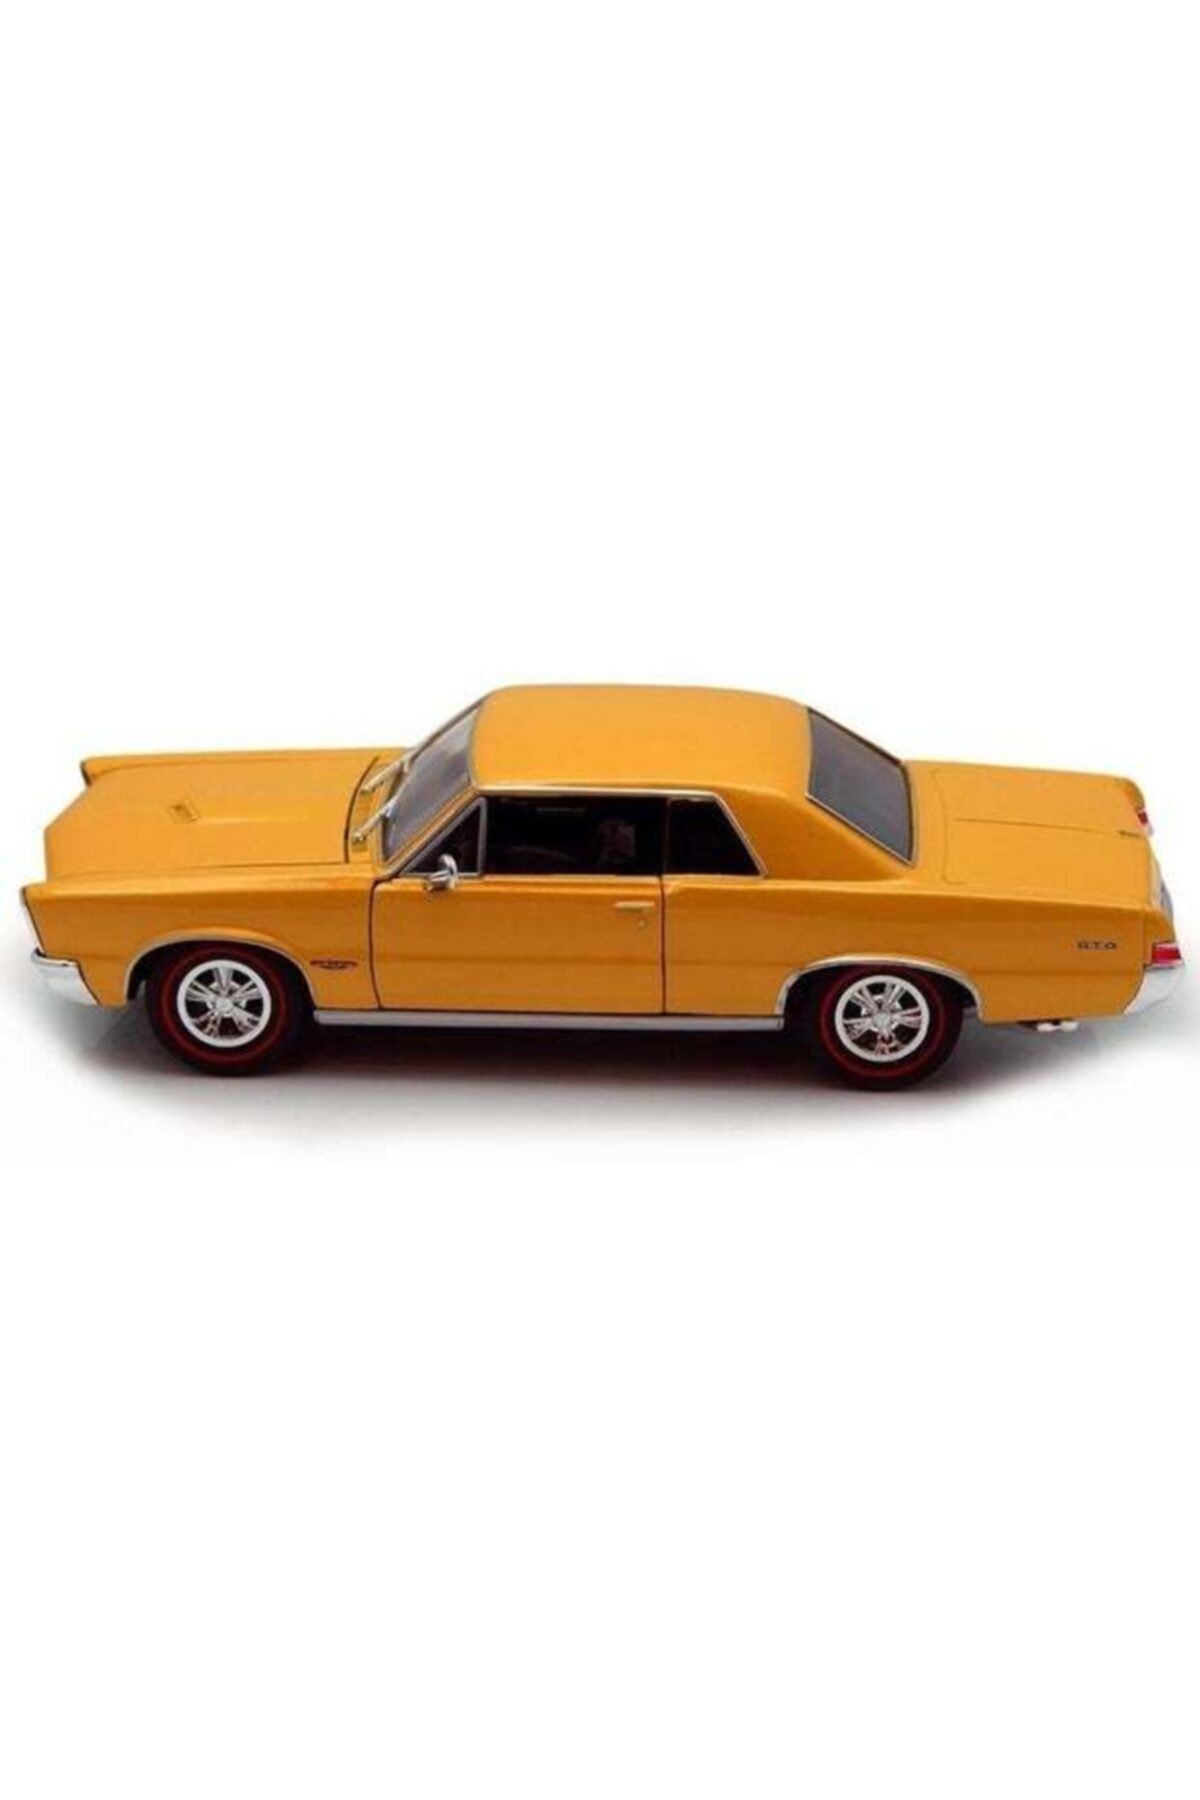 WELLY 1:24 1965 Pontiac Gto Oyuncak Araba /aynı Gün Kargo)